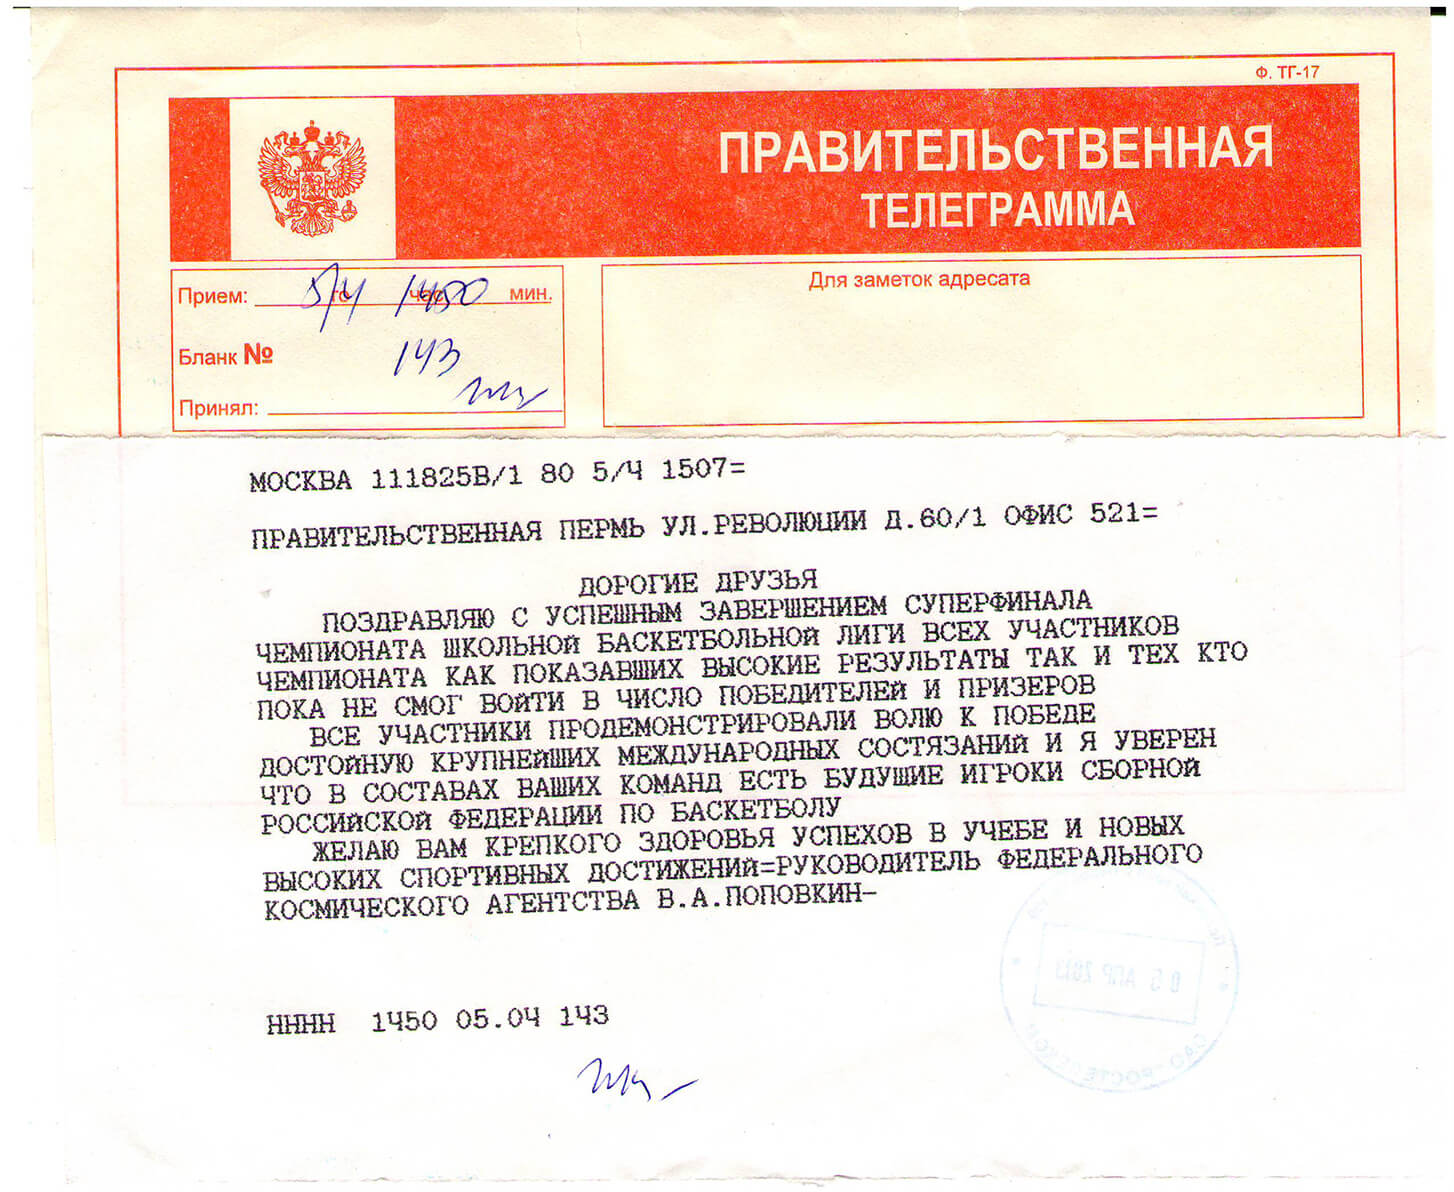 Скачать телеграмму онлайн на русском бесплатно фото 49